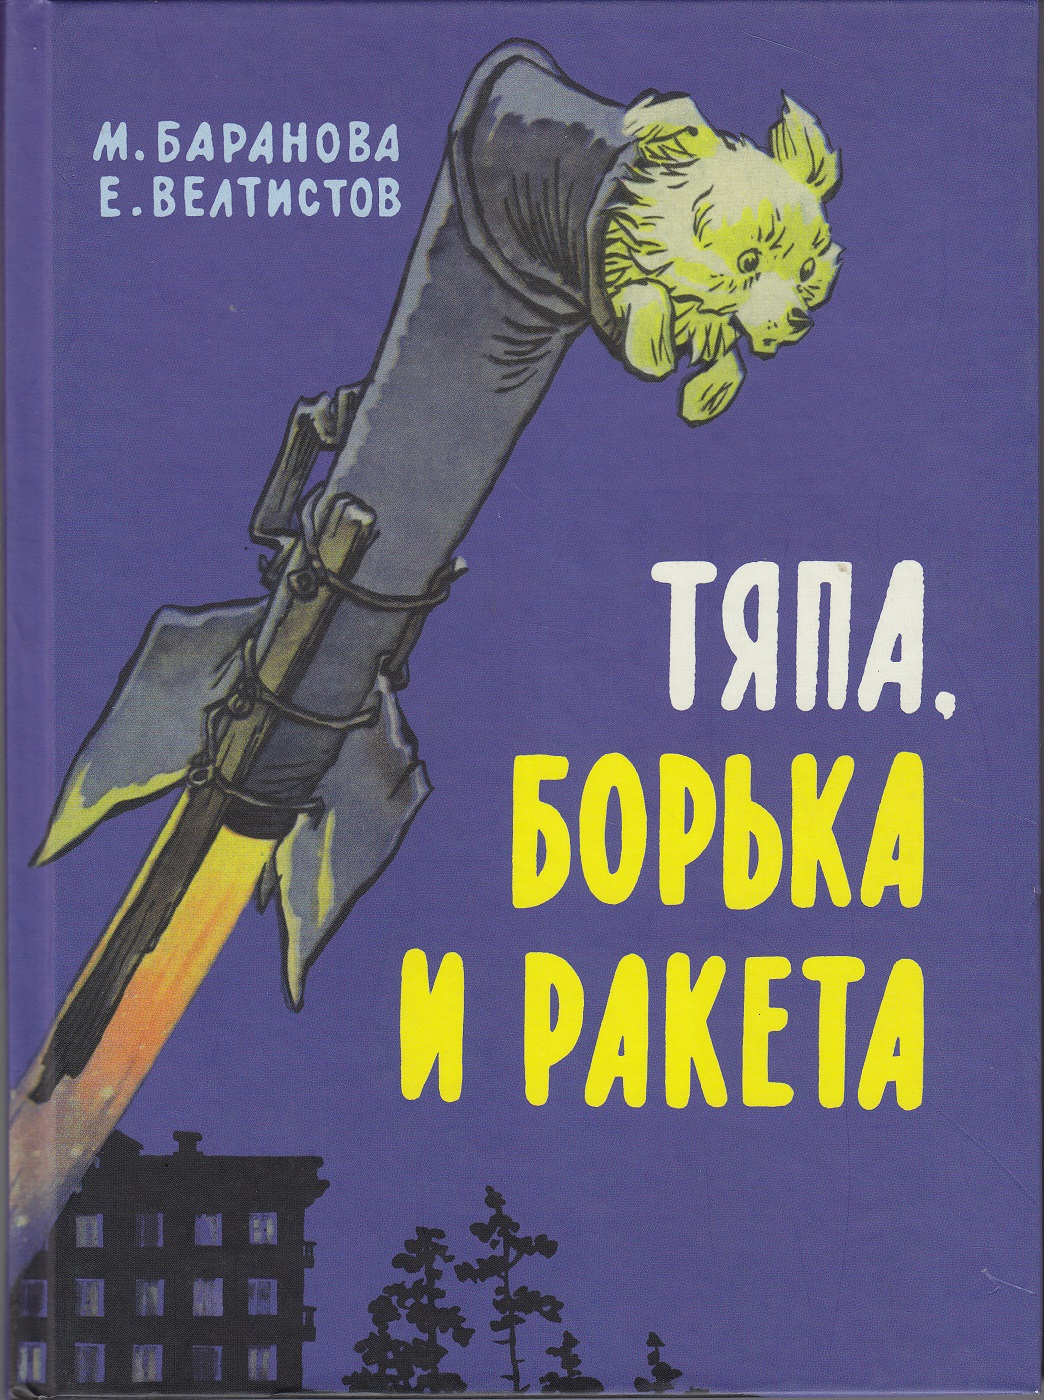 Нажмите для увеличения. Баранова М. П. Тяпа, Борька и ракета(фото книги из фонда библиотеки)